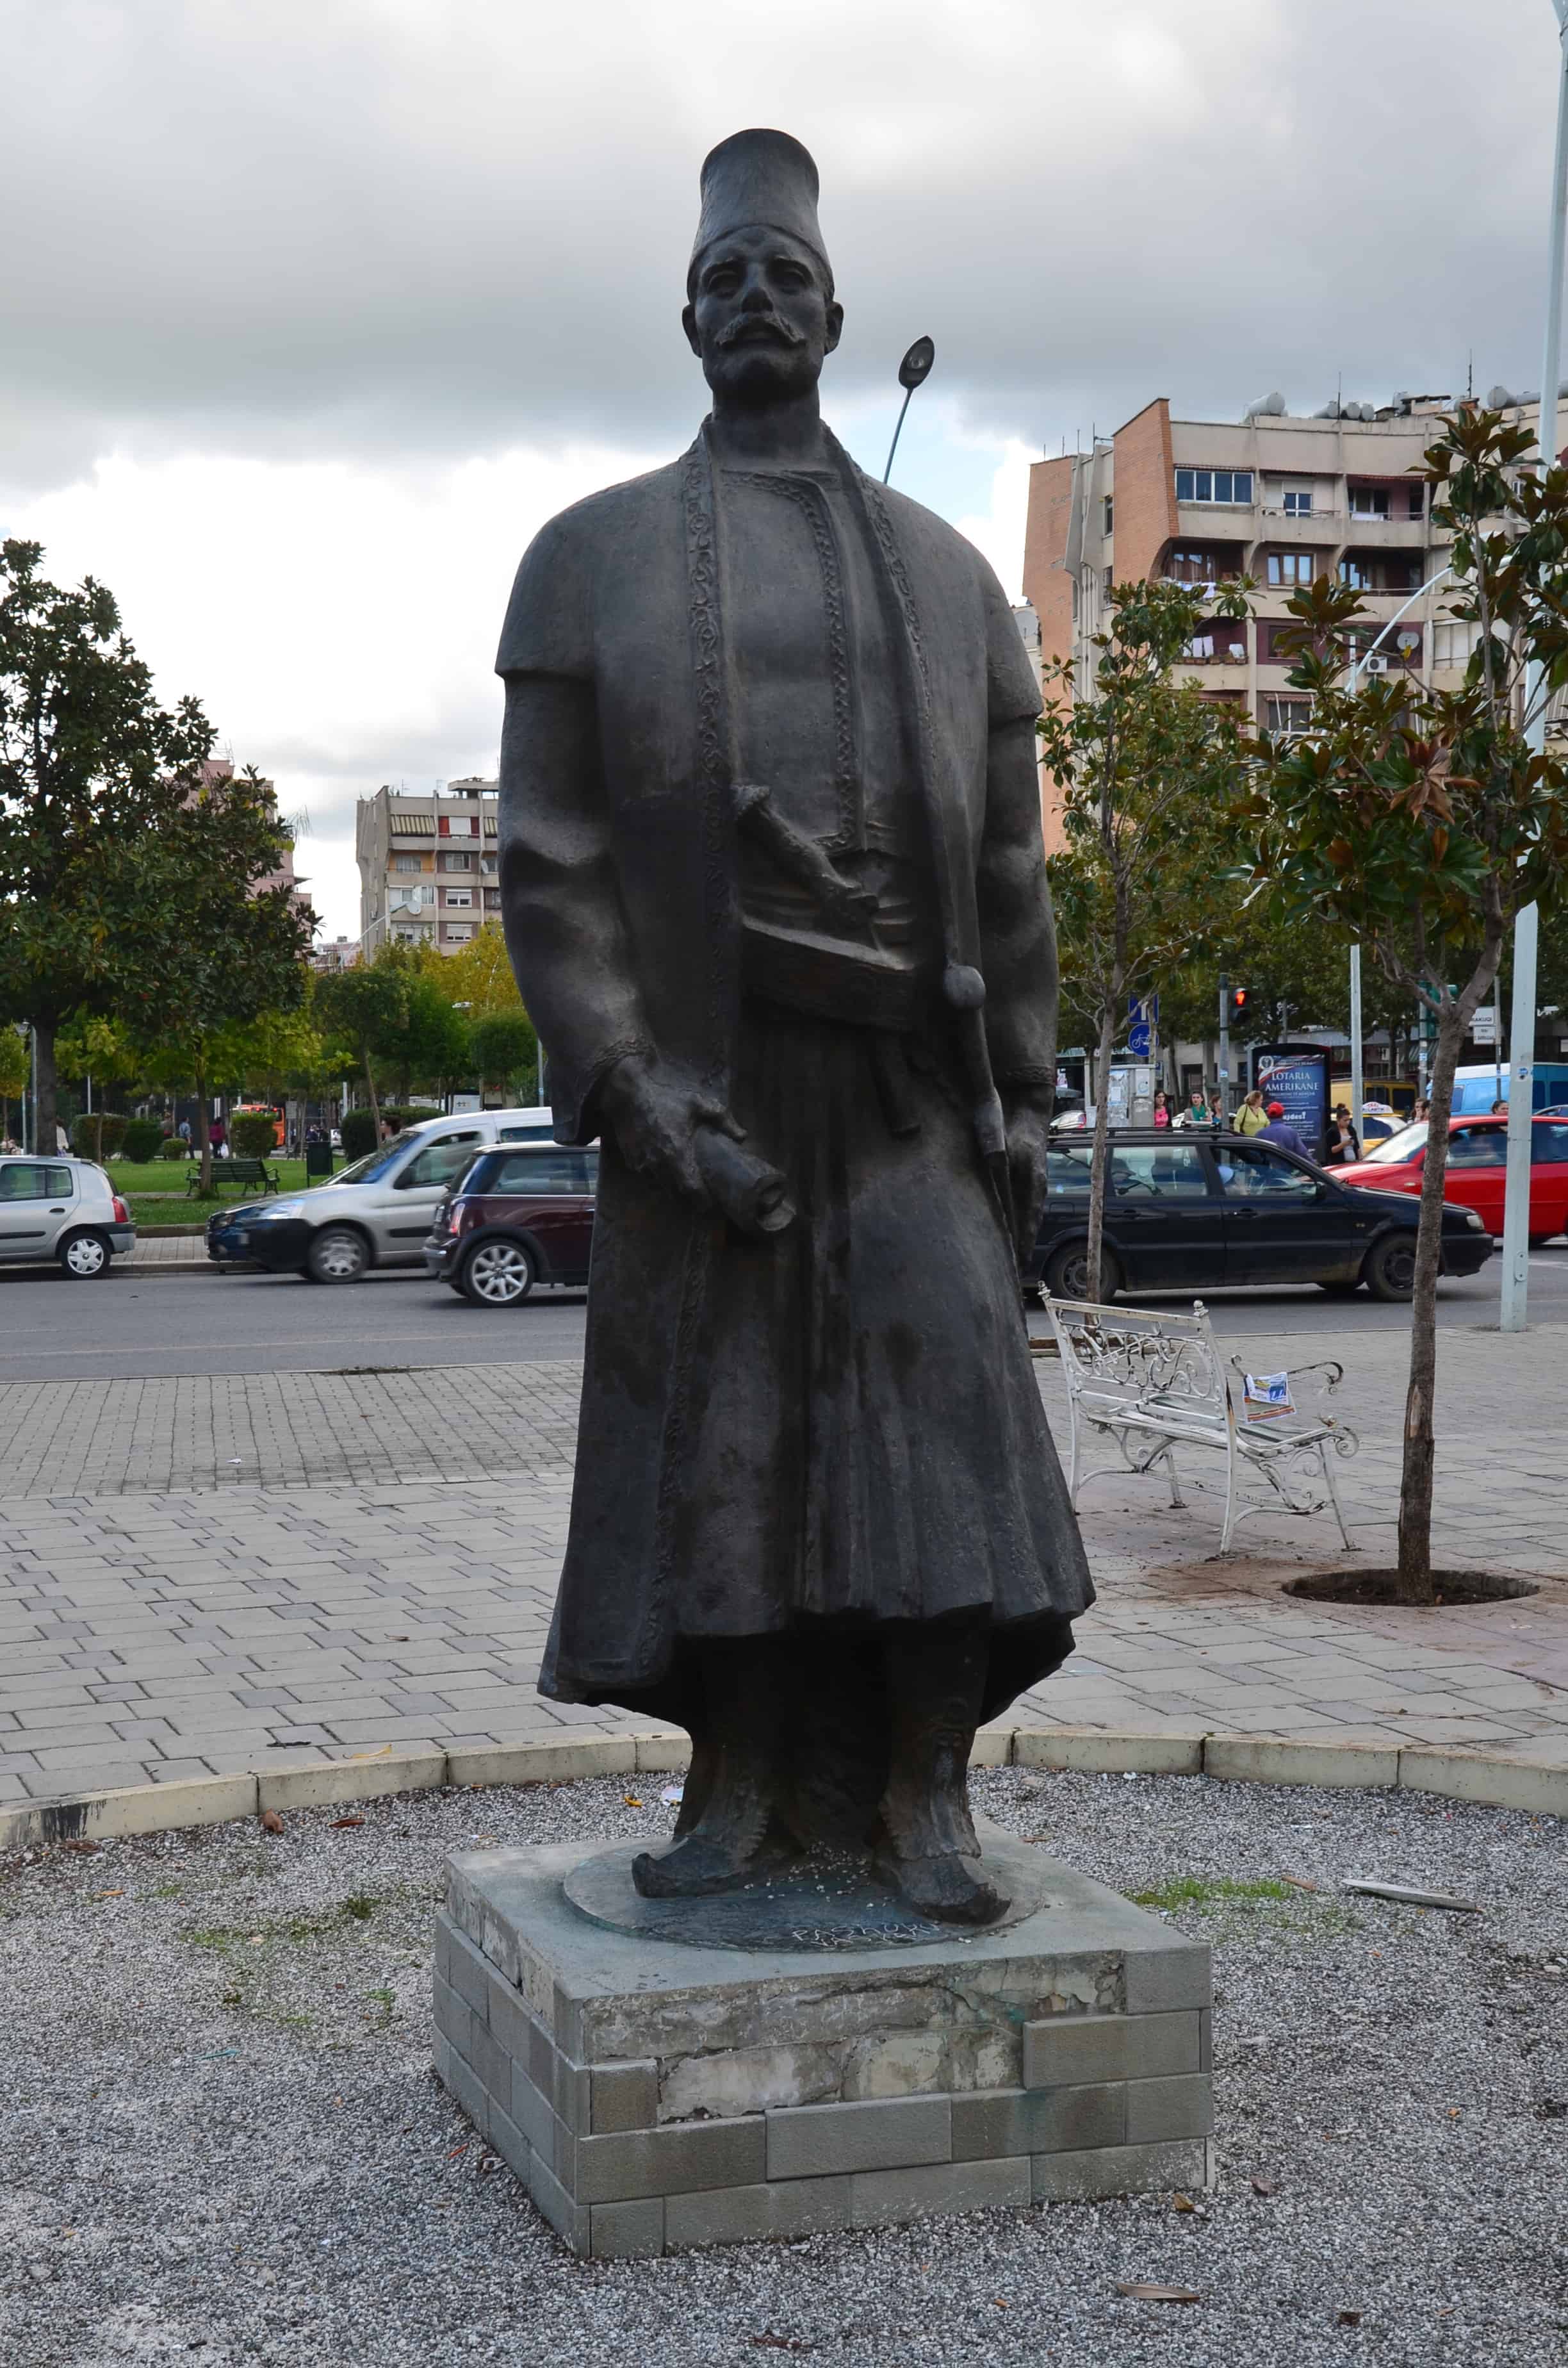 Statue of Sulejman Pashë Ballgjini in Tiranë, Albania